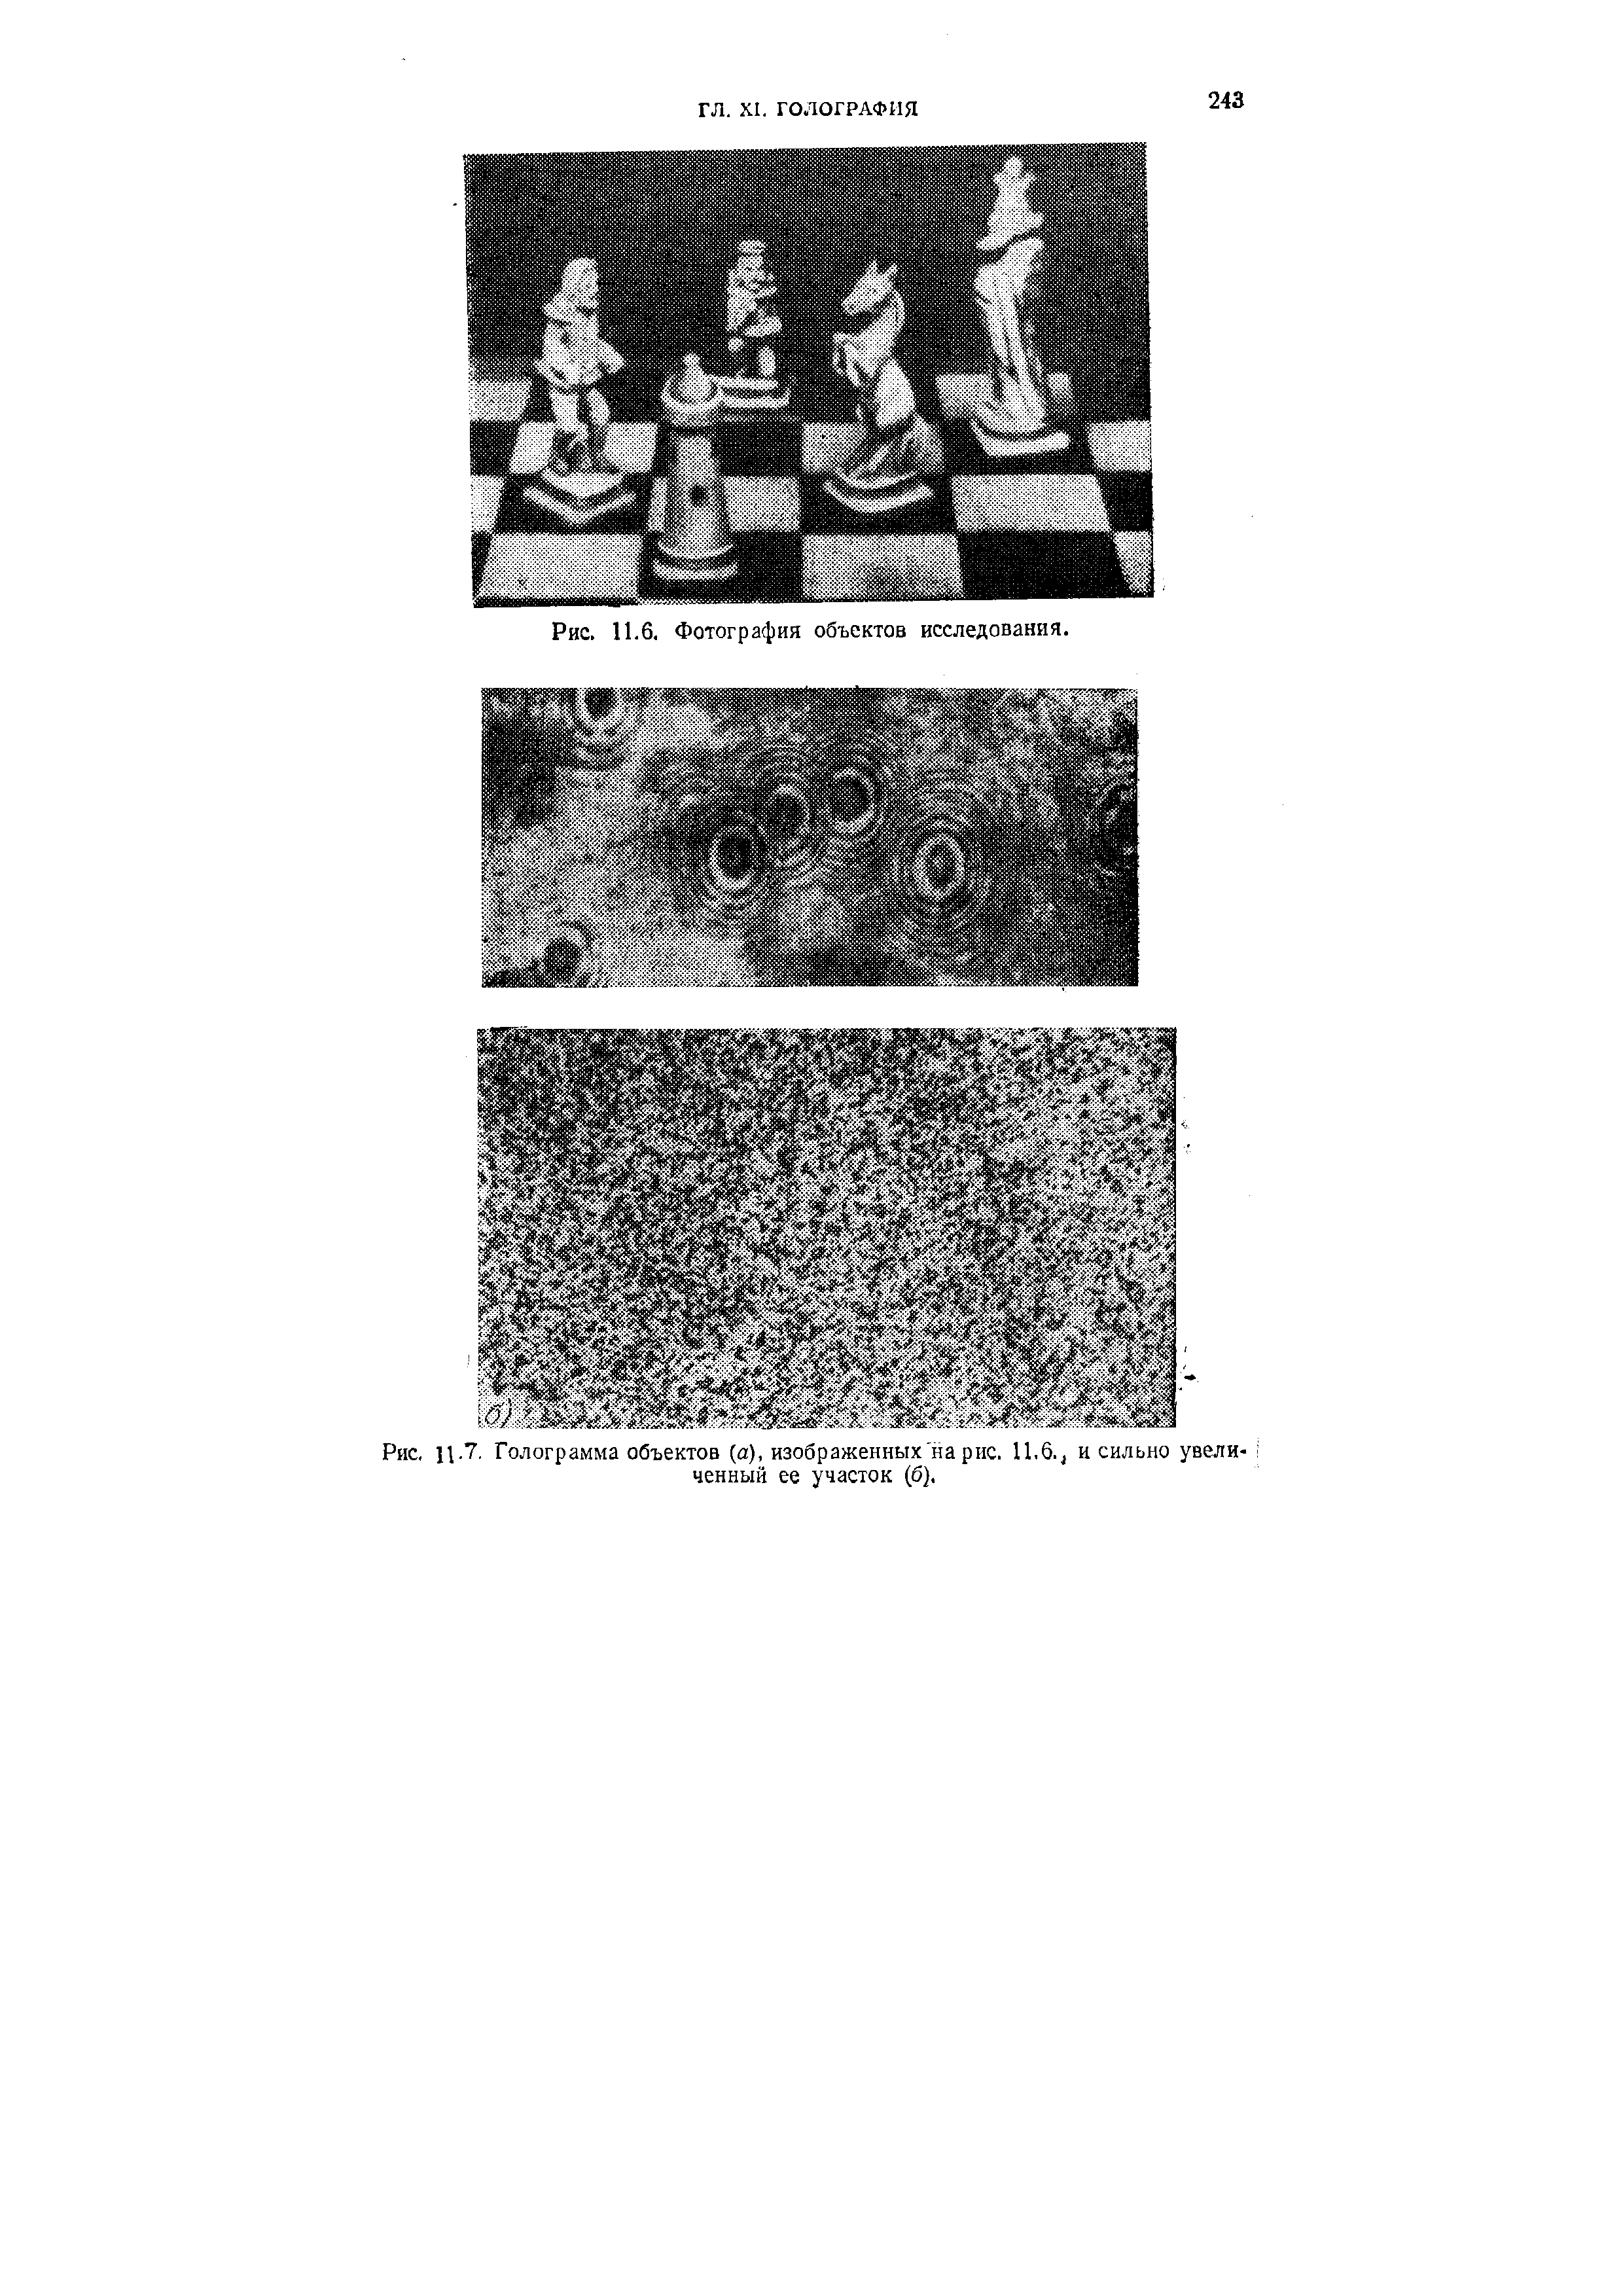 Рис. Ц.7. Голограмма объектов (а), изображенных на рис. 11.6., и сильно увеличенный ее участок (б),
